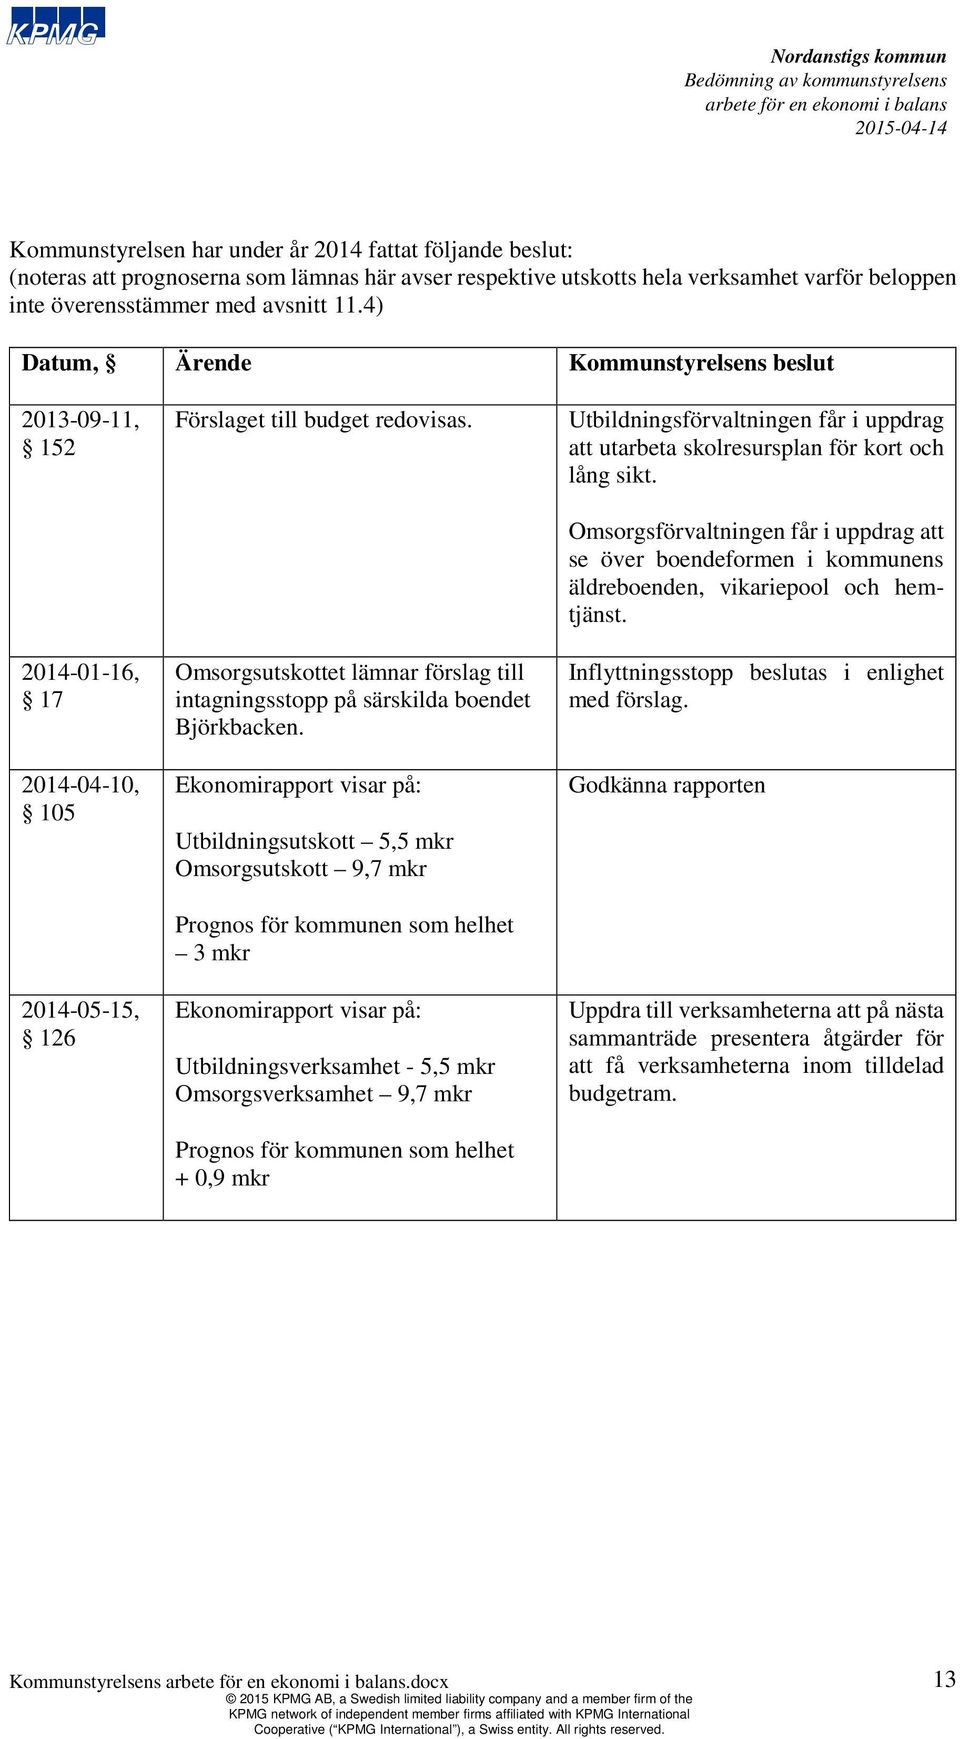 Omsorgsutskottet lämnar förslag till intagningsstopp på särskilda boendet Björkbacken.